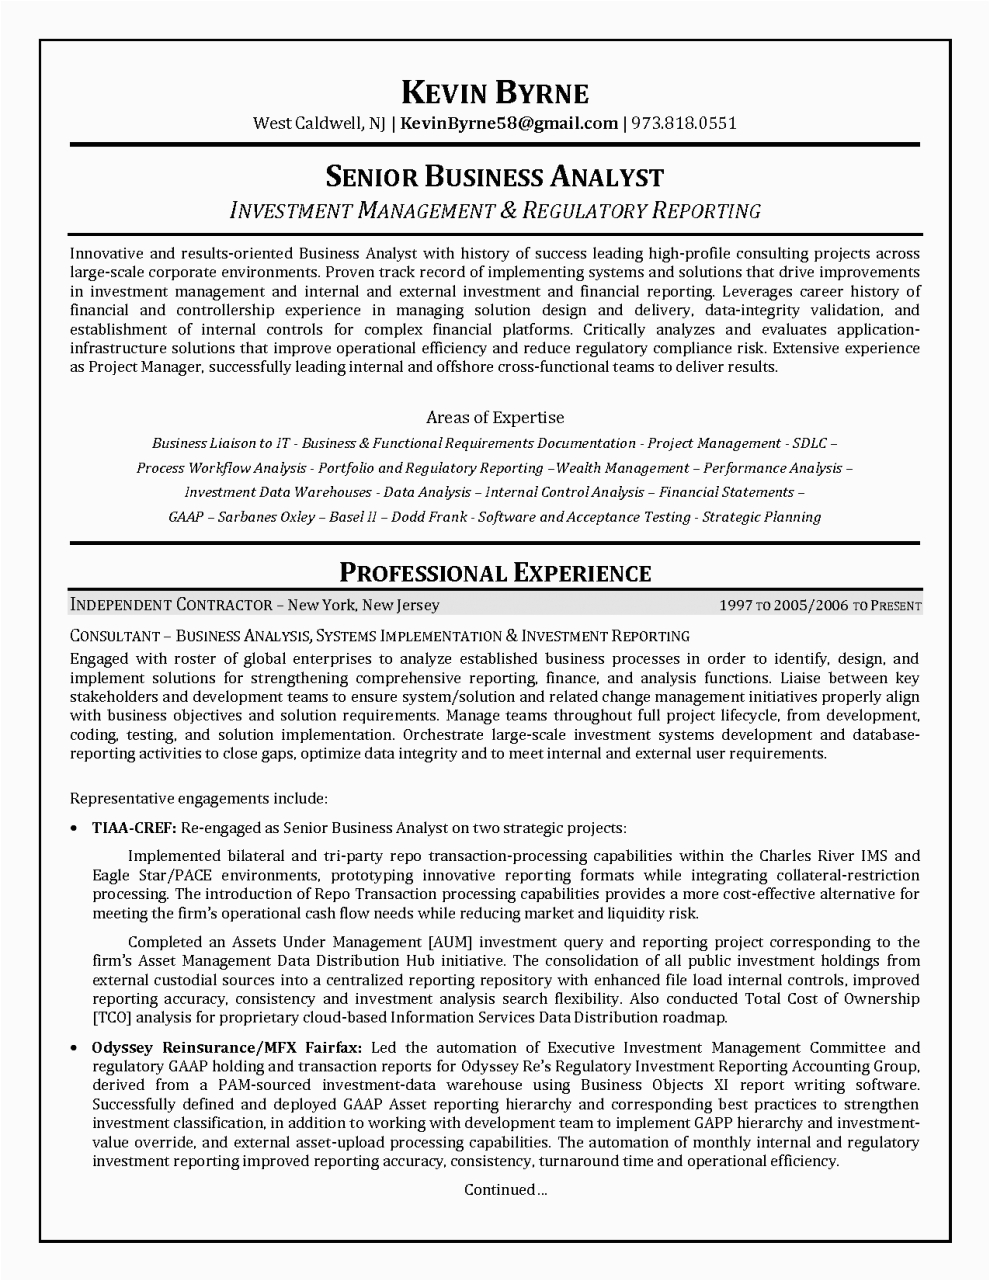 Sample Resume for Senior Business Analyst Resume Senior Business Analyst Resume format Business